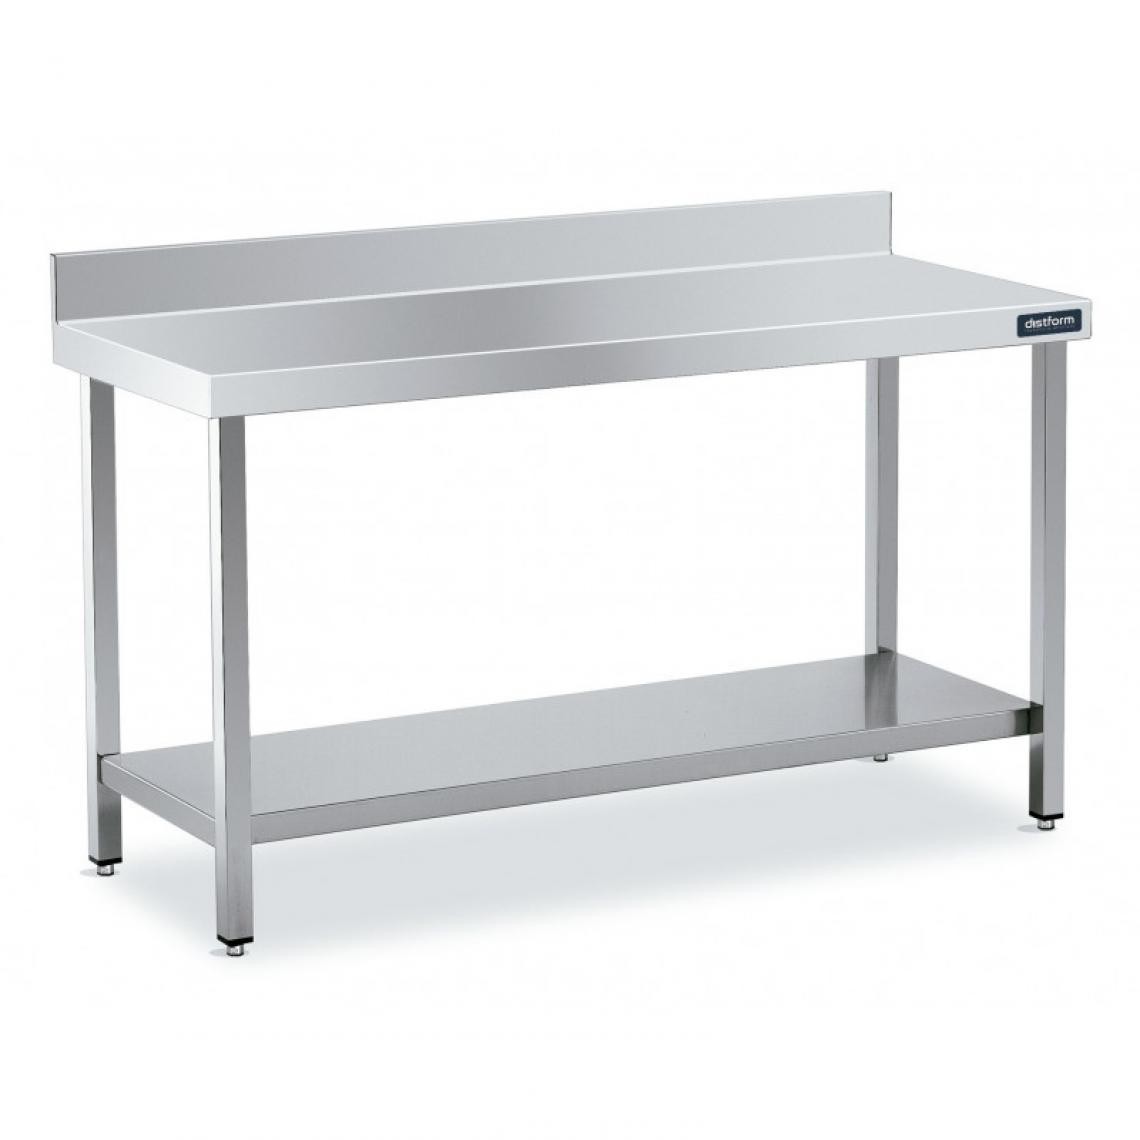 DISTFORM - Table Adossée en Inox avec 1 étagère Profondeur 700 mm - Distform - Acier inoxydable900x700 - Tables à manger